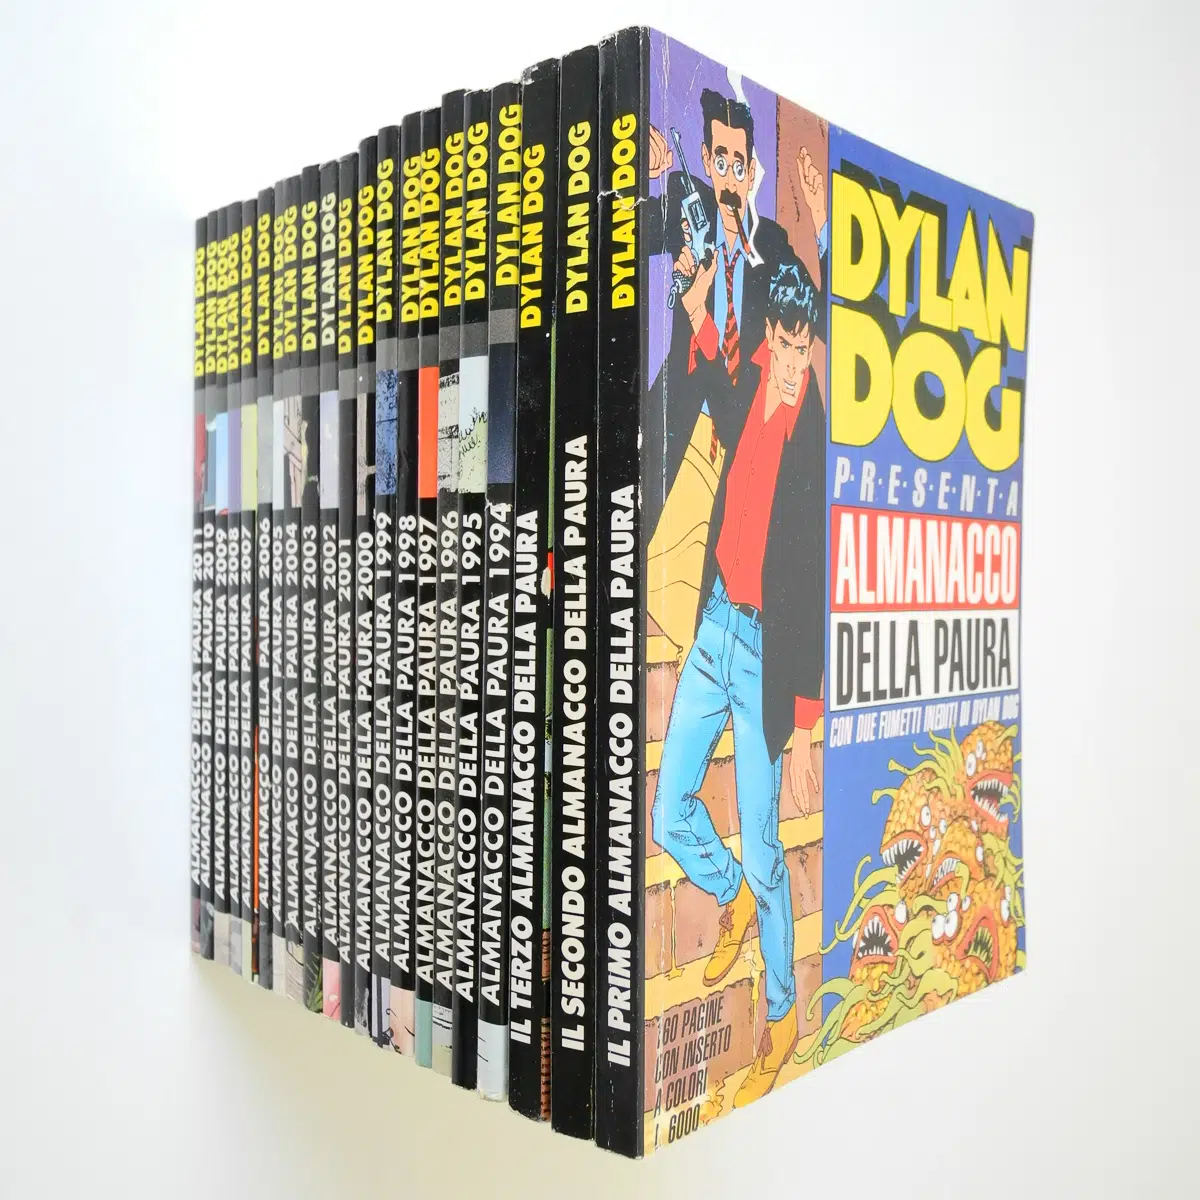 Dylan Dog Almanacco della paura completa dal 1991 al 2011 originali